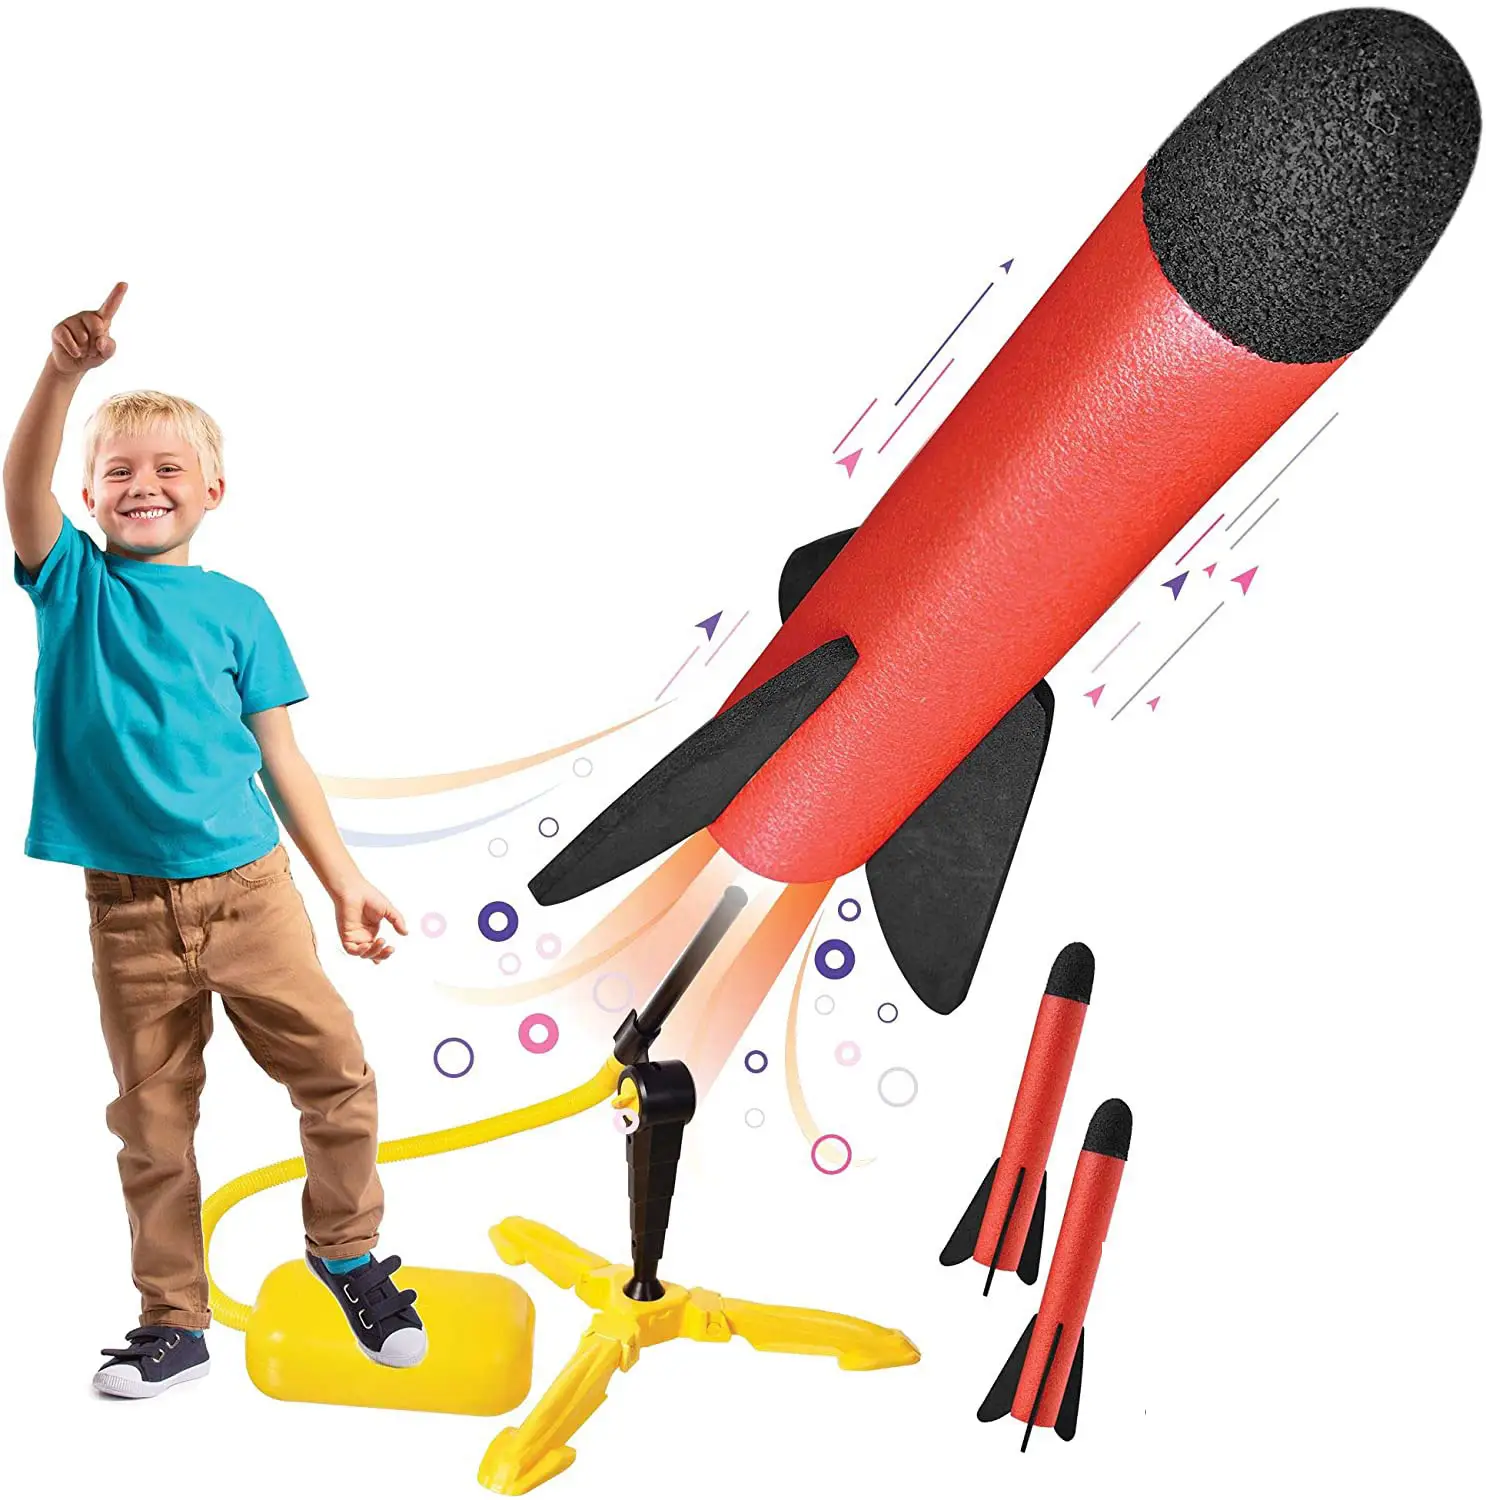 Hot Selling Eva Foam Rocket Launcher Voor Kids Rocket Speelgoed Voor Kind Pedaal Model Raket